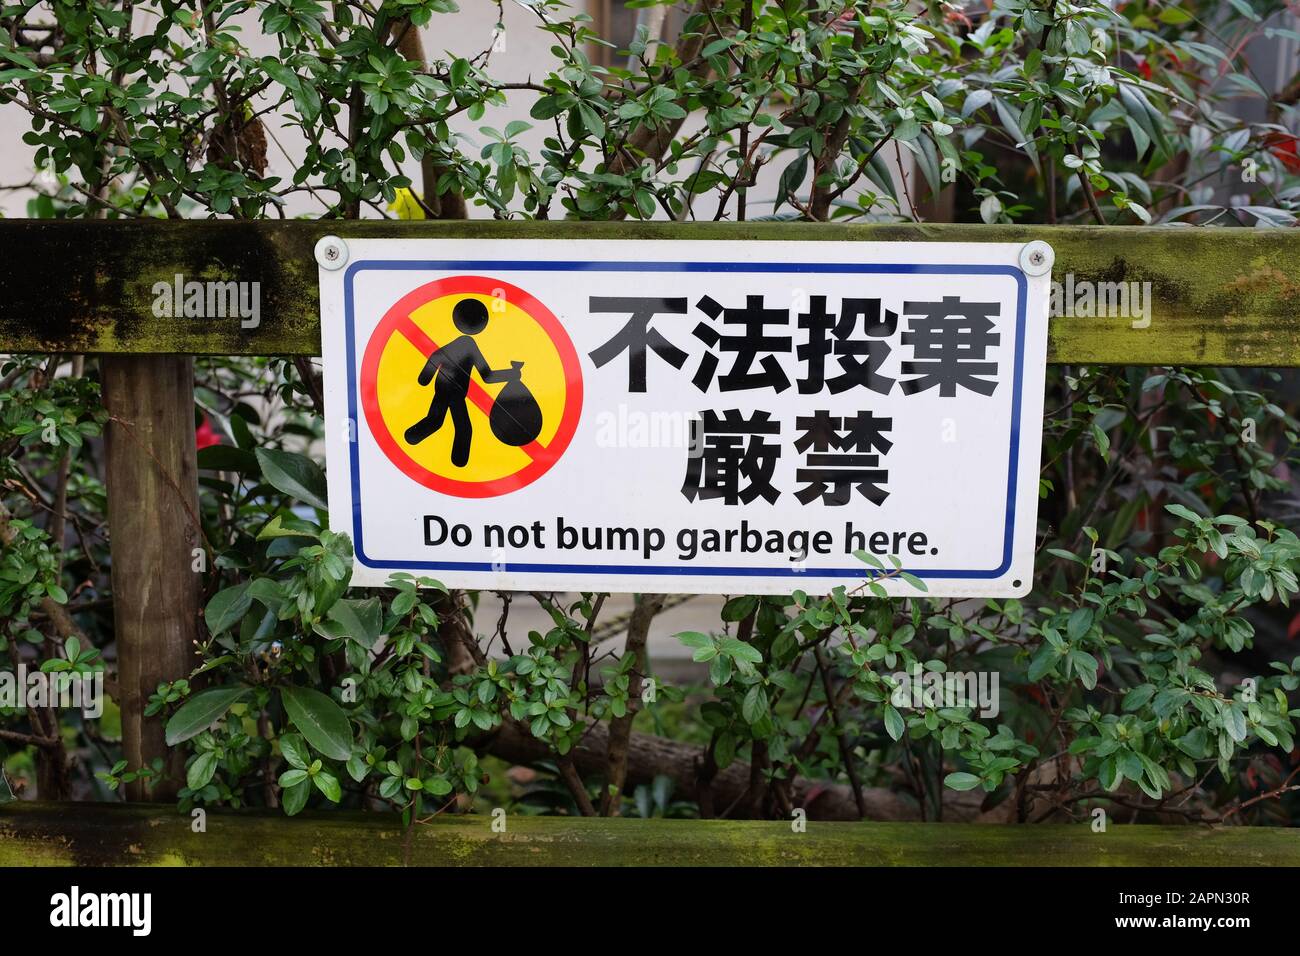 Un signe écrit en anglais et japonais sur l'affichage au Japon, mais avec une erreur d'orthographe en anglais. Banque D'Images